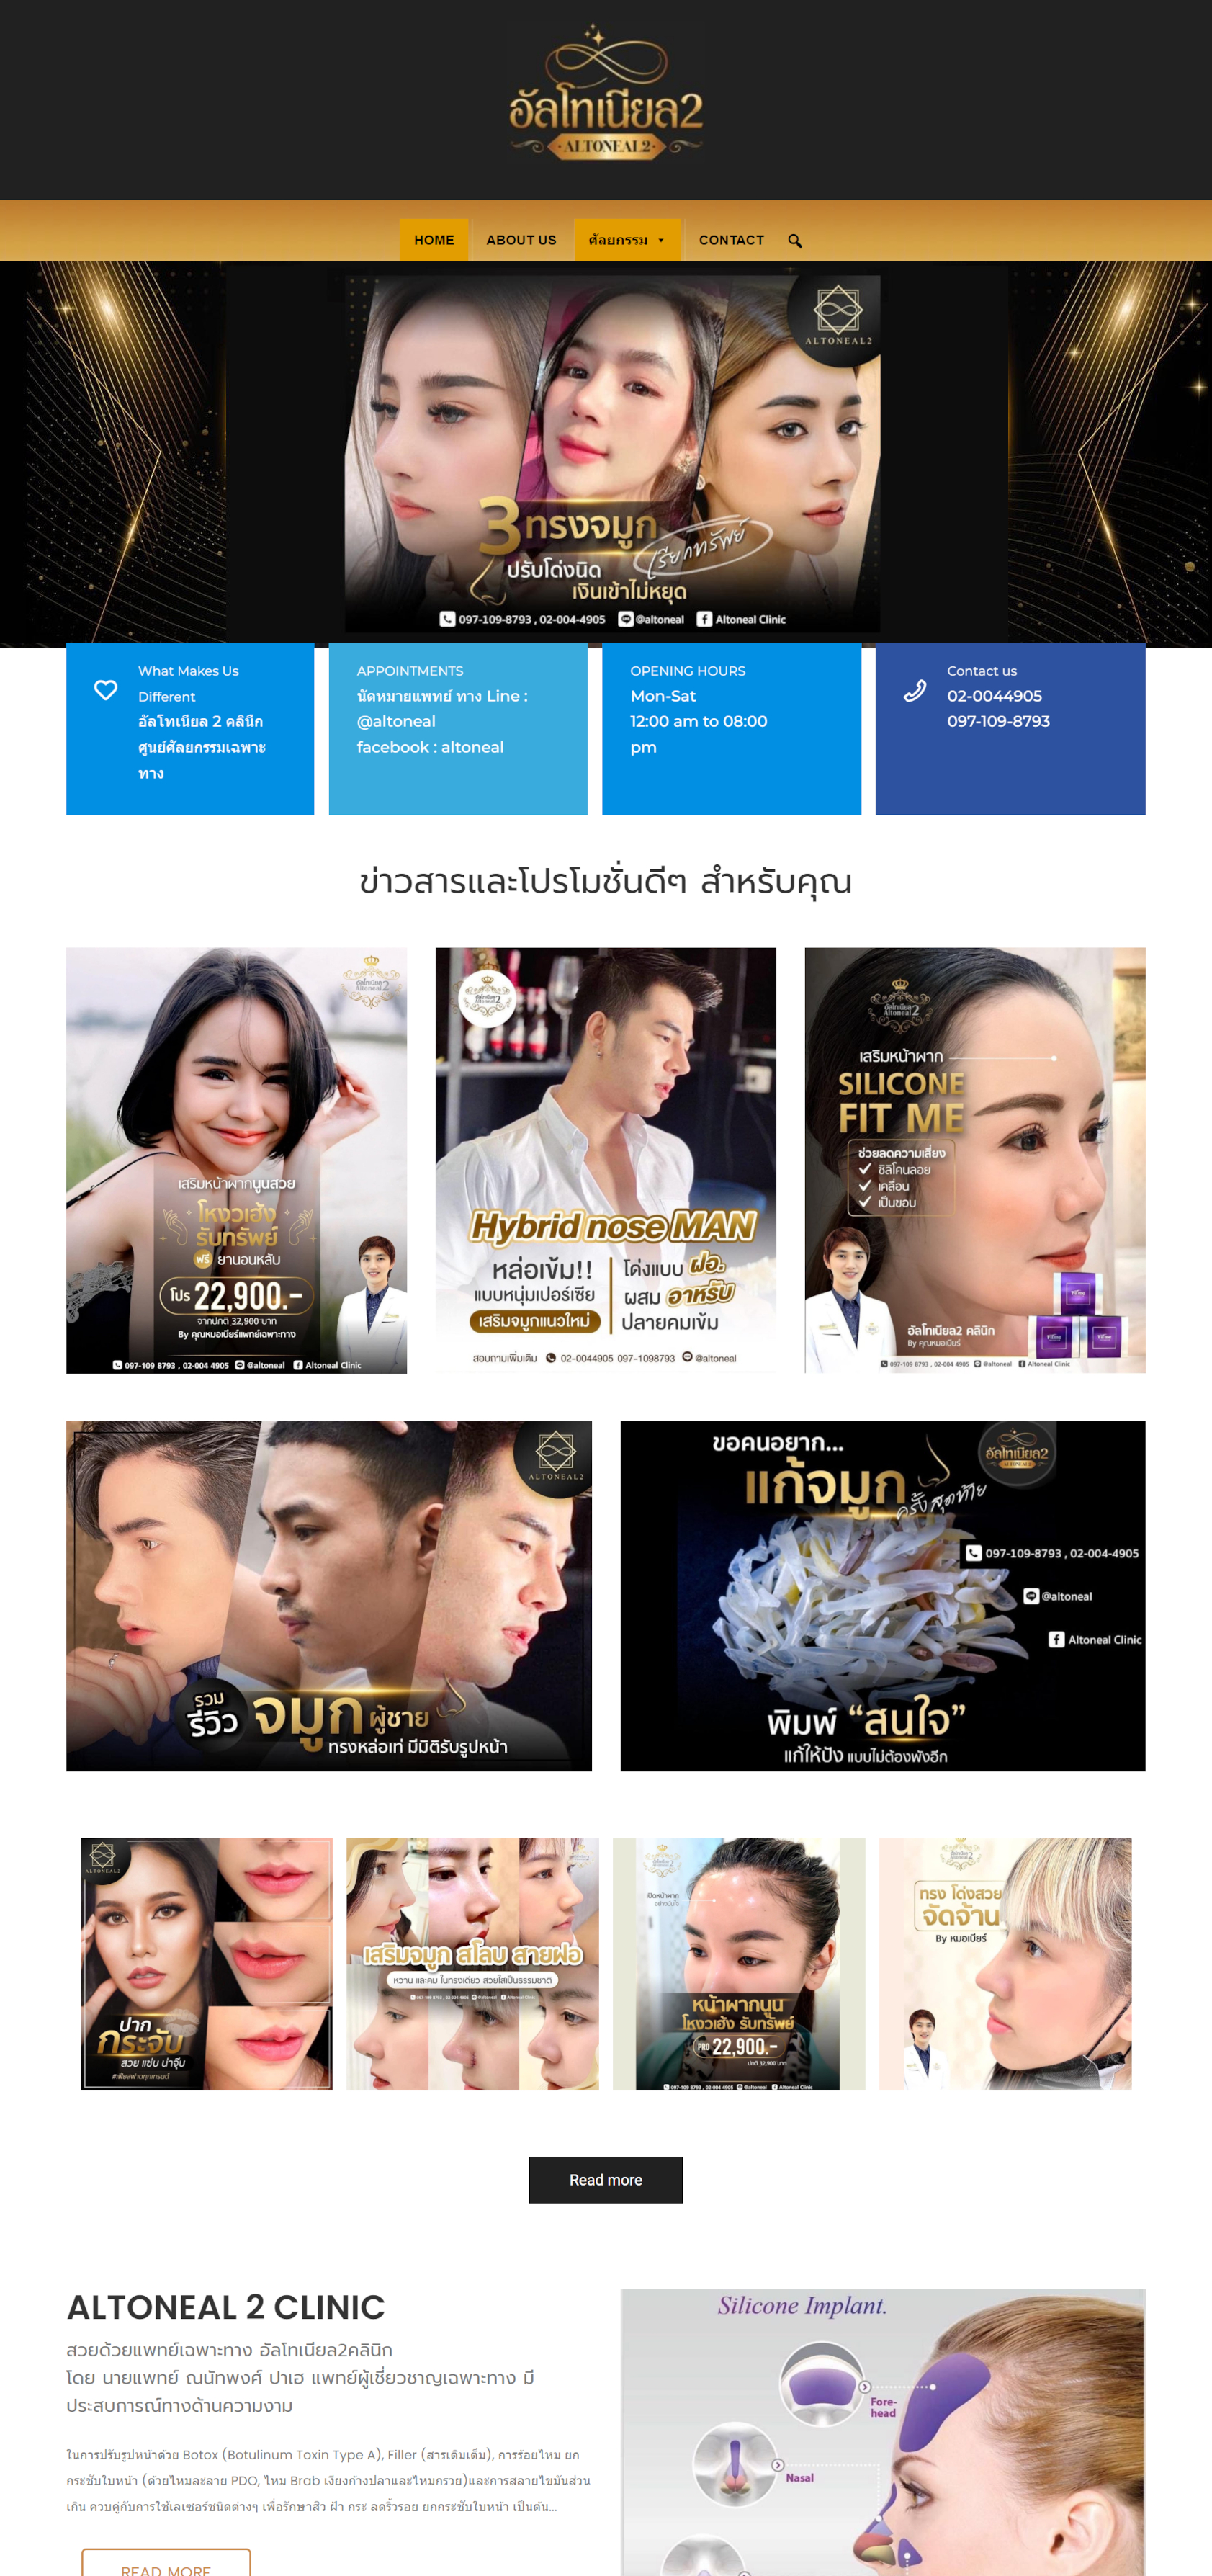 altonealclinic.com - websitethailand.com ขอขอบคุณ คุณลูกค้าผู้มีอุปการะคุณ องค์กร ธุรกิจ ที่ให้ความไว้วางใจ ใช้งานกับเว็บไซต์สำเร็จรูป Wordpress Theme - business plus